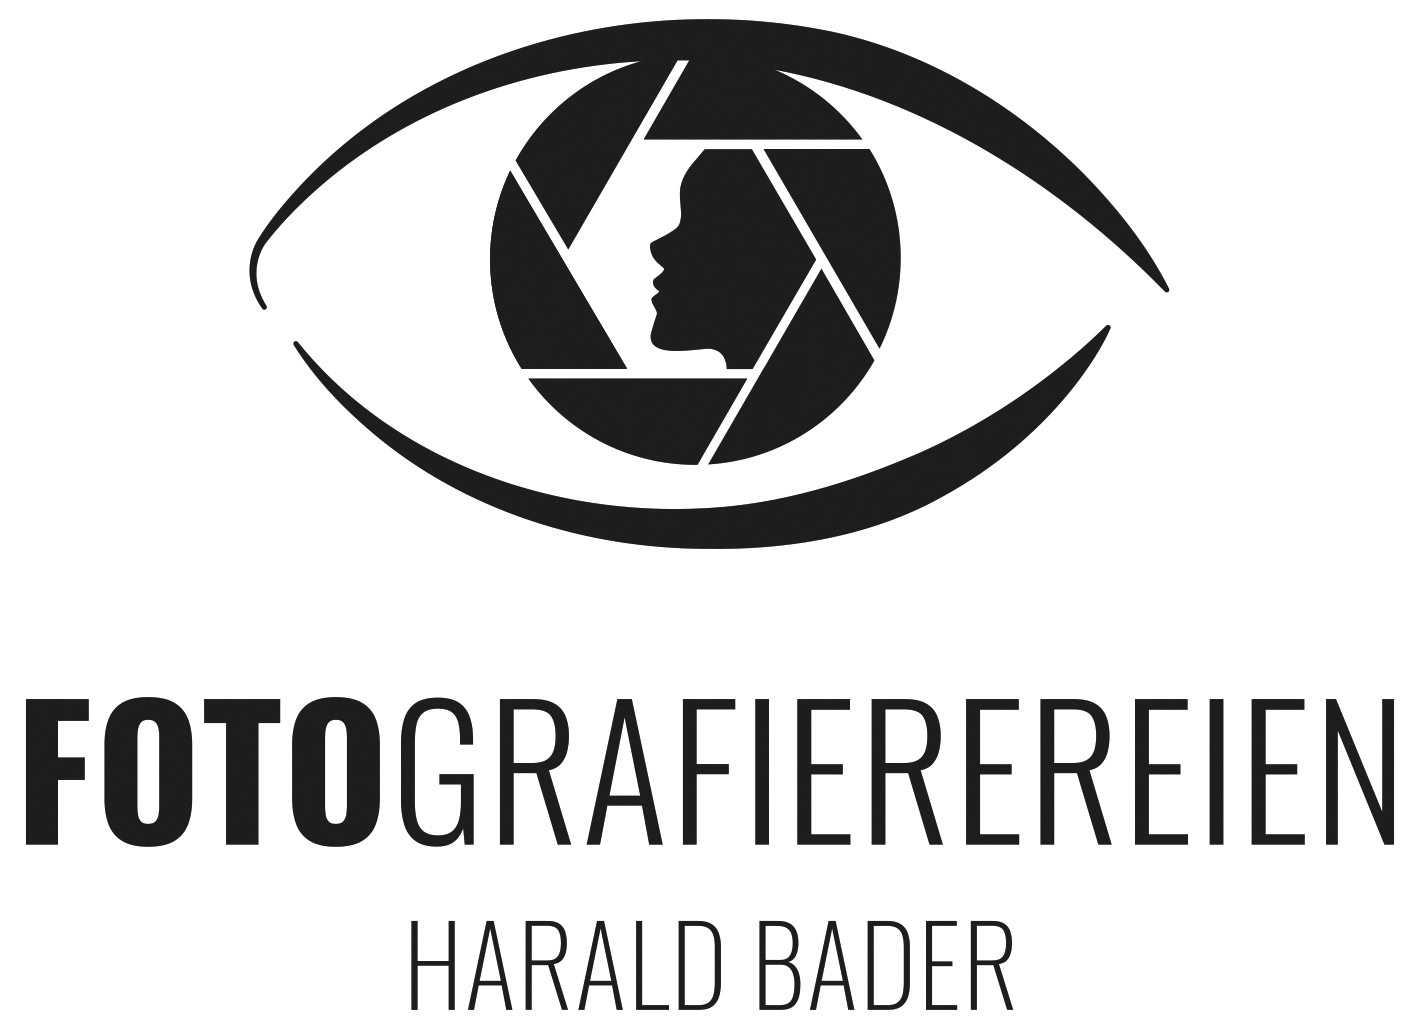 Harald Bader